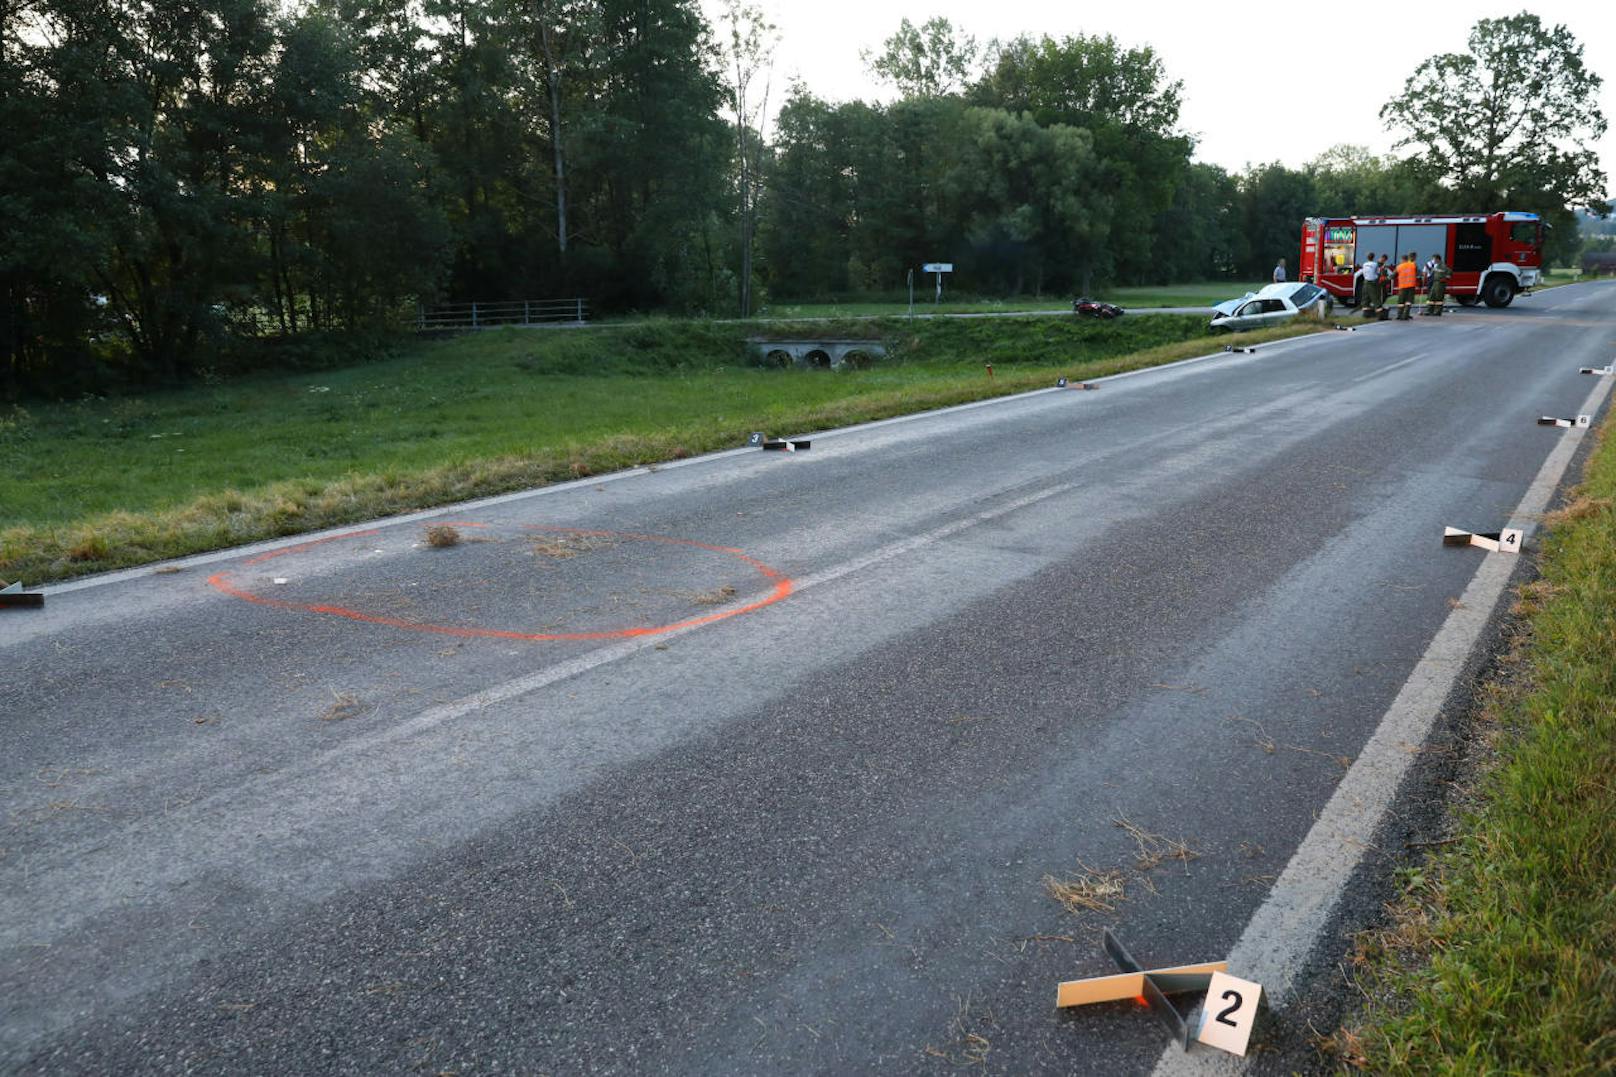 Bei einer schweren Kollision zwischen einem Motorrad und einem Pkw im Gemeindegebiet von Manning (Bz. Vöcklabruck) gab es einen Toten. Trotz Reanimationsversuchen kam für den Motorradlenker jede Hilfe zu spät.